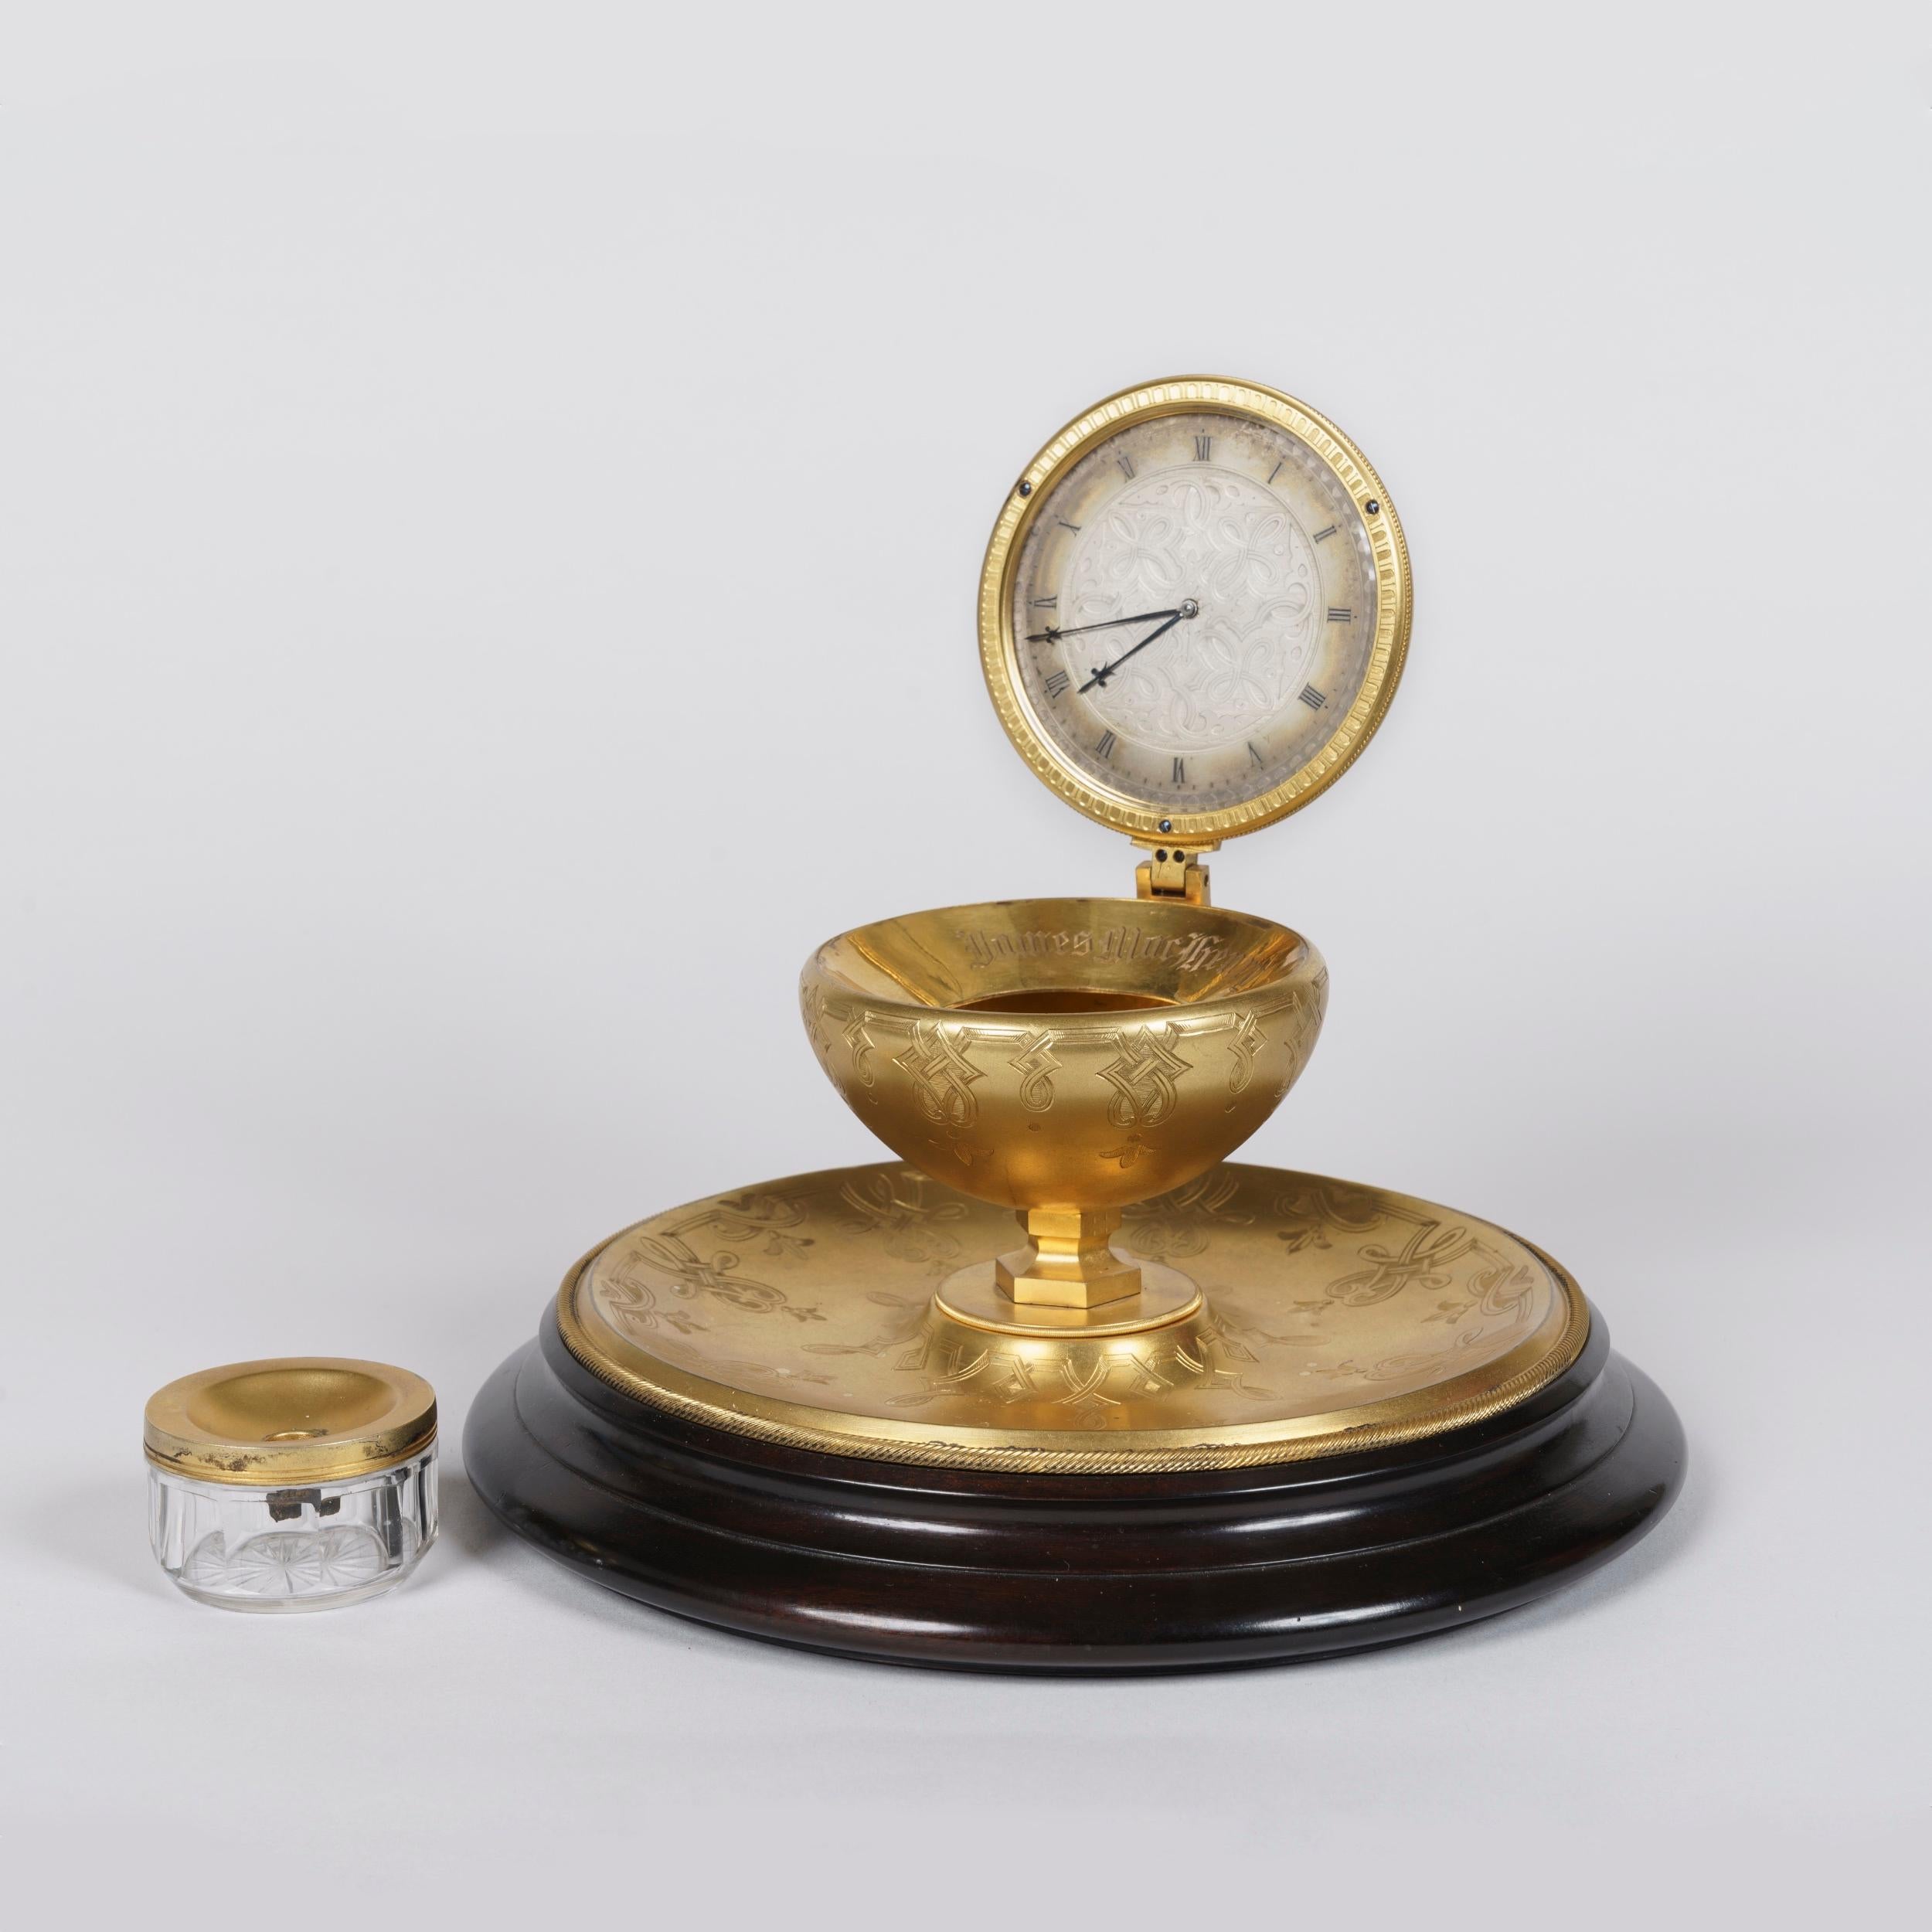 Une horloge de table inhabituelle en forme d'encrier
Attribué à Thomas Cole

Construit en laiton doré, le garde-temps de fantaisie s'élève d'une base ébénisée tournée, ornée d'un plateau concave en laiton gravé de motifs géométriques ; un socle